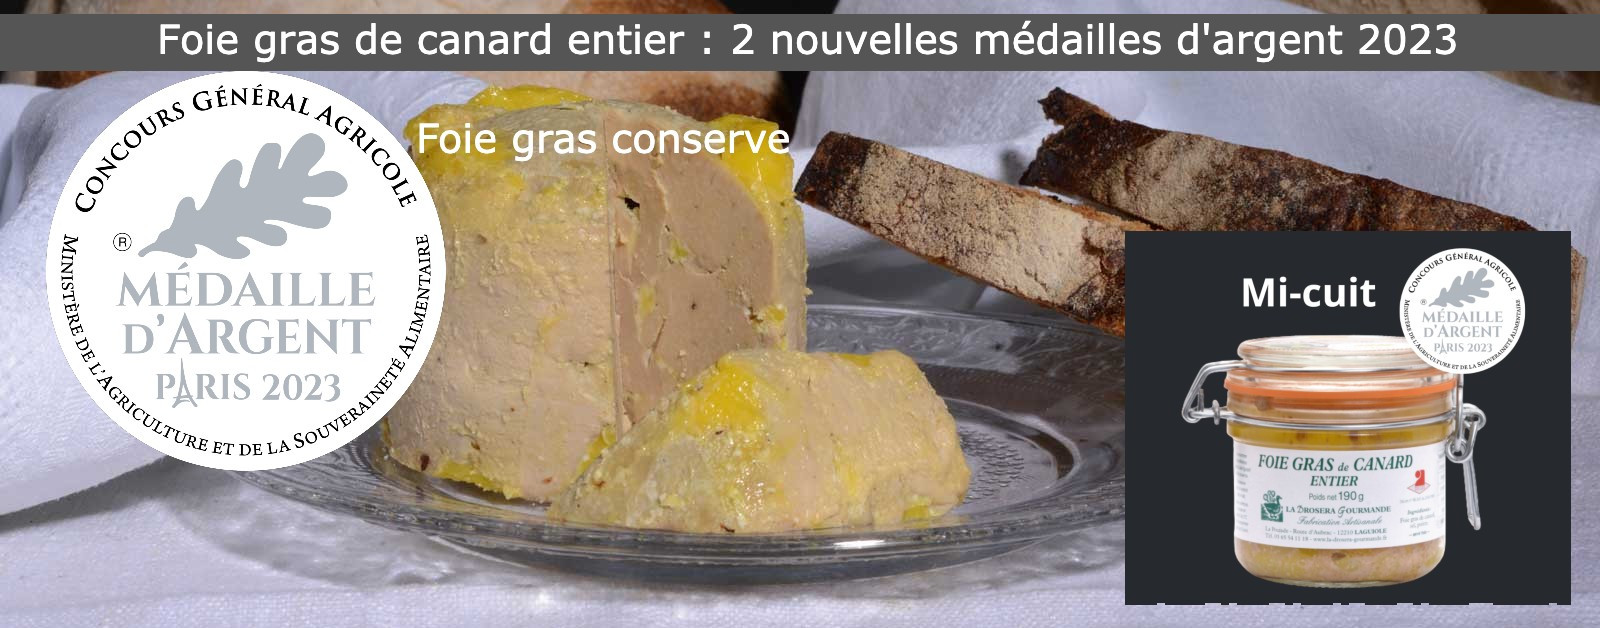 La Drosera Gourmande remporte deux nouvelles médailles d'argent en 2023 au Concours Général Agricole de Paris pour le foie gras de canard entier mi-cuit et en conserve